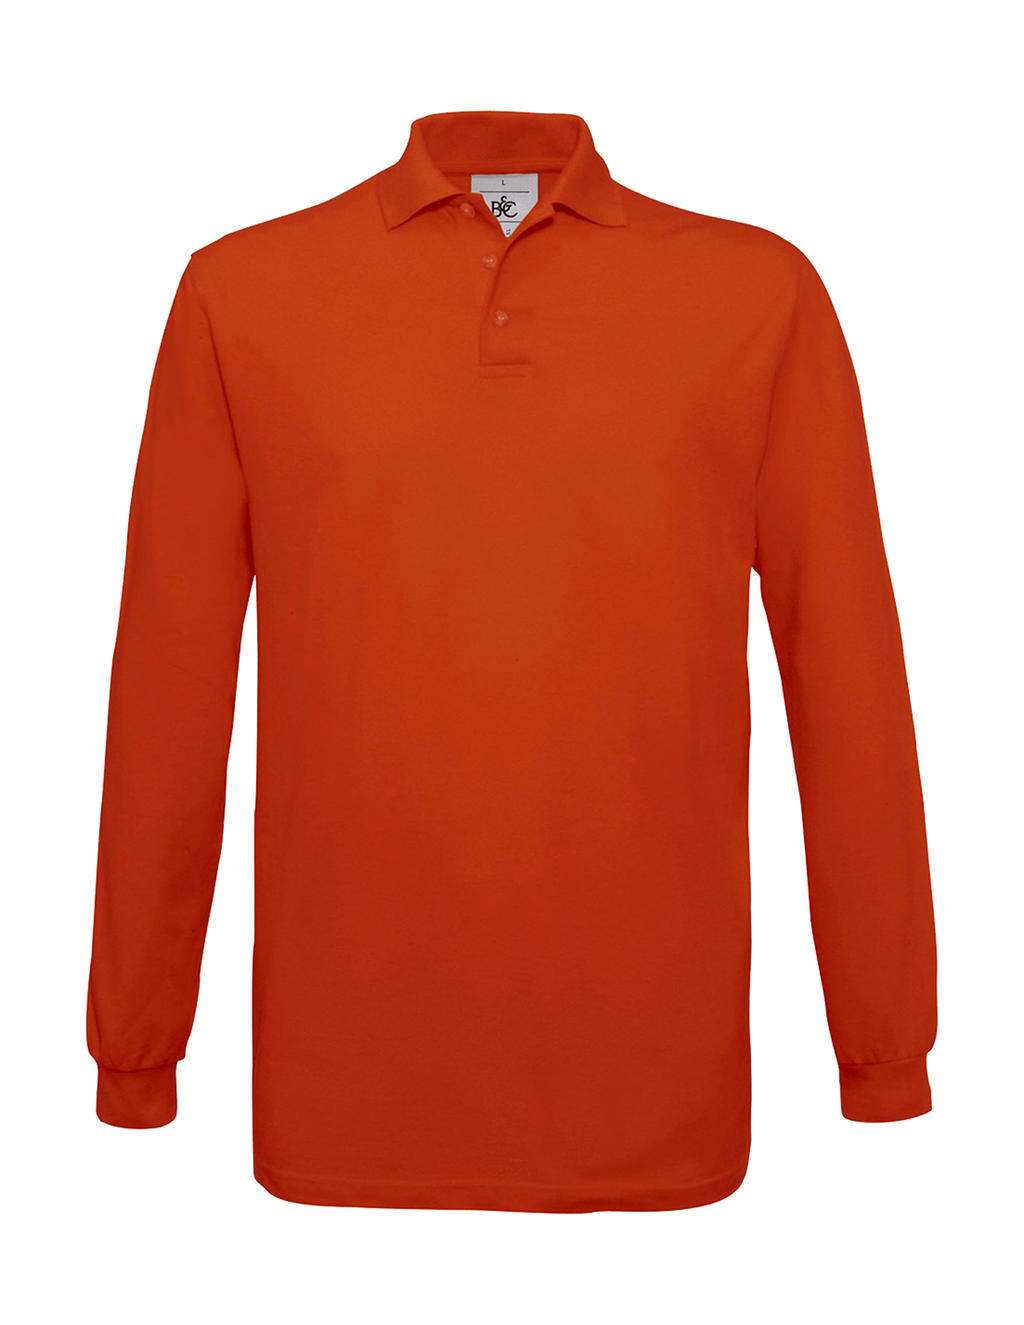 Pánské polo tričko B&C Safran s dlouhým rukávem - oranžové, L